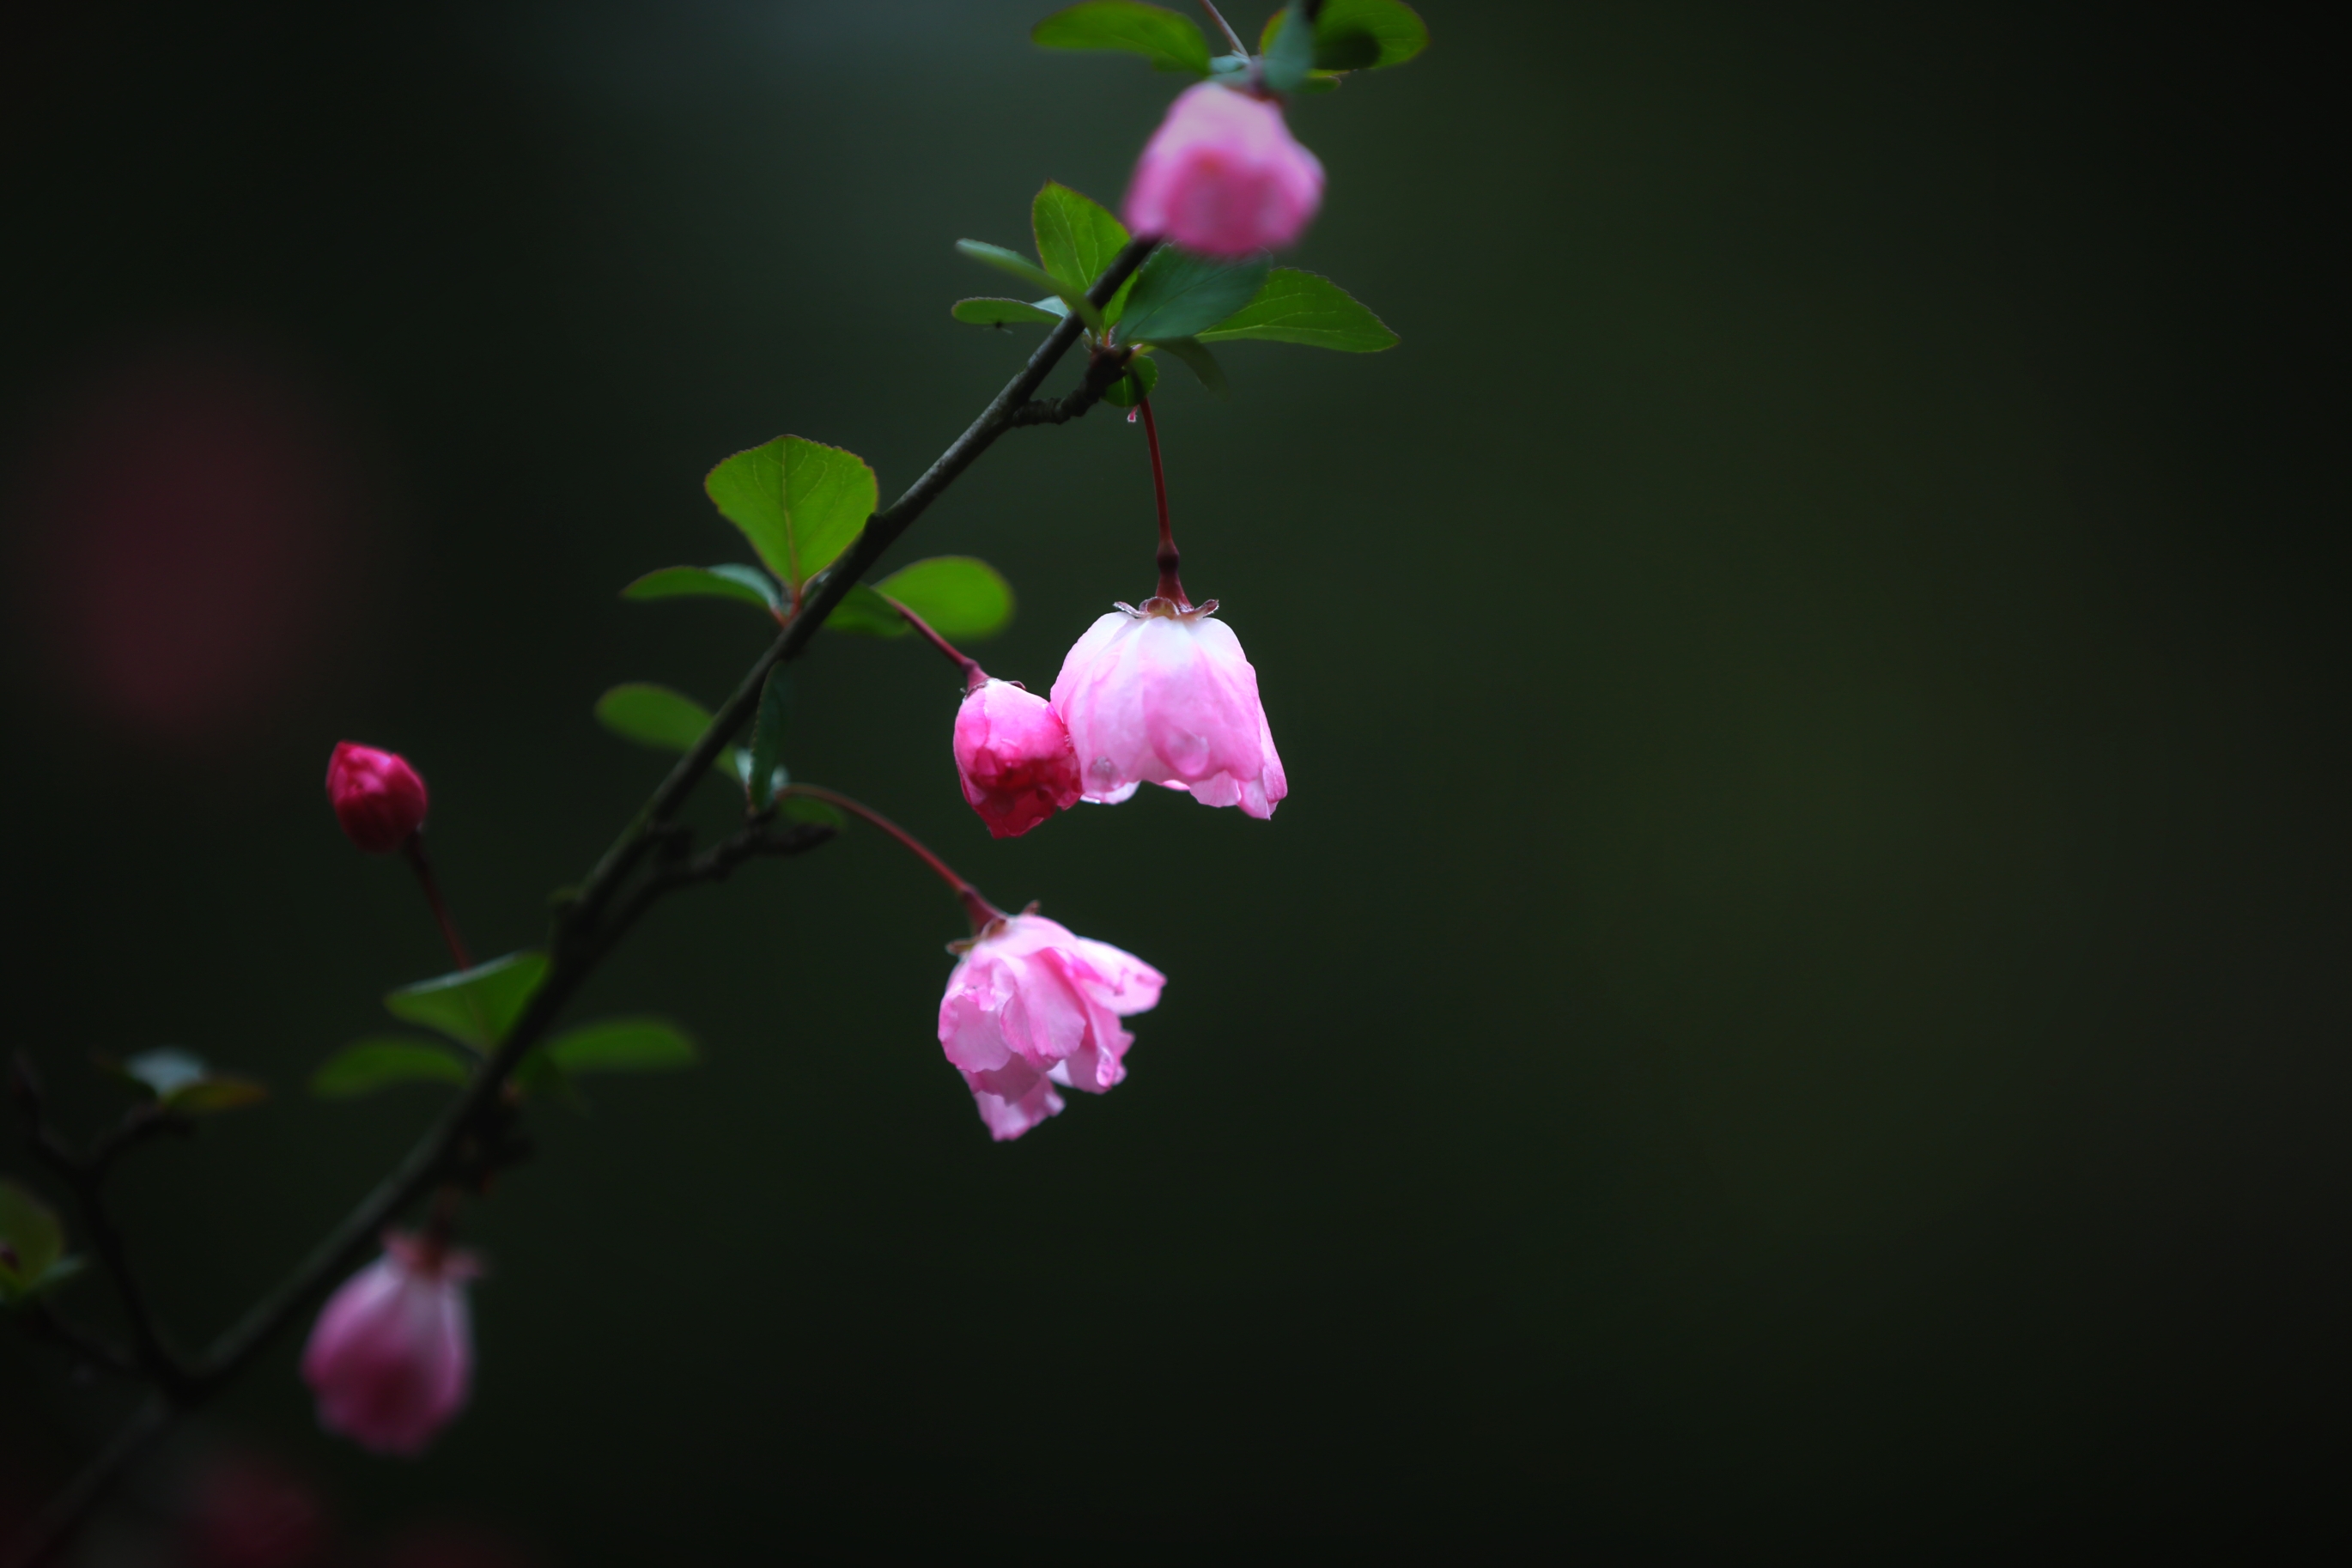 我最喜欢的是垂丝海棠:垂丝海棠花色艳丽,花姿优美.